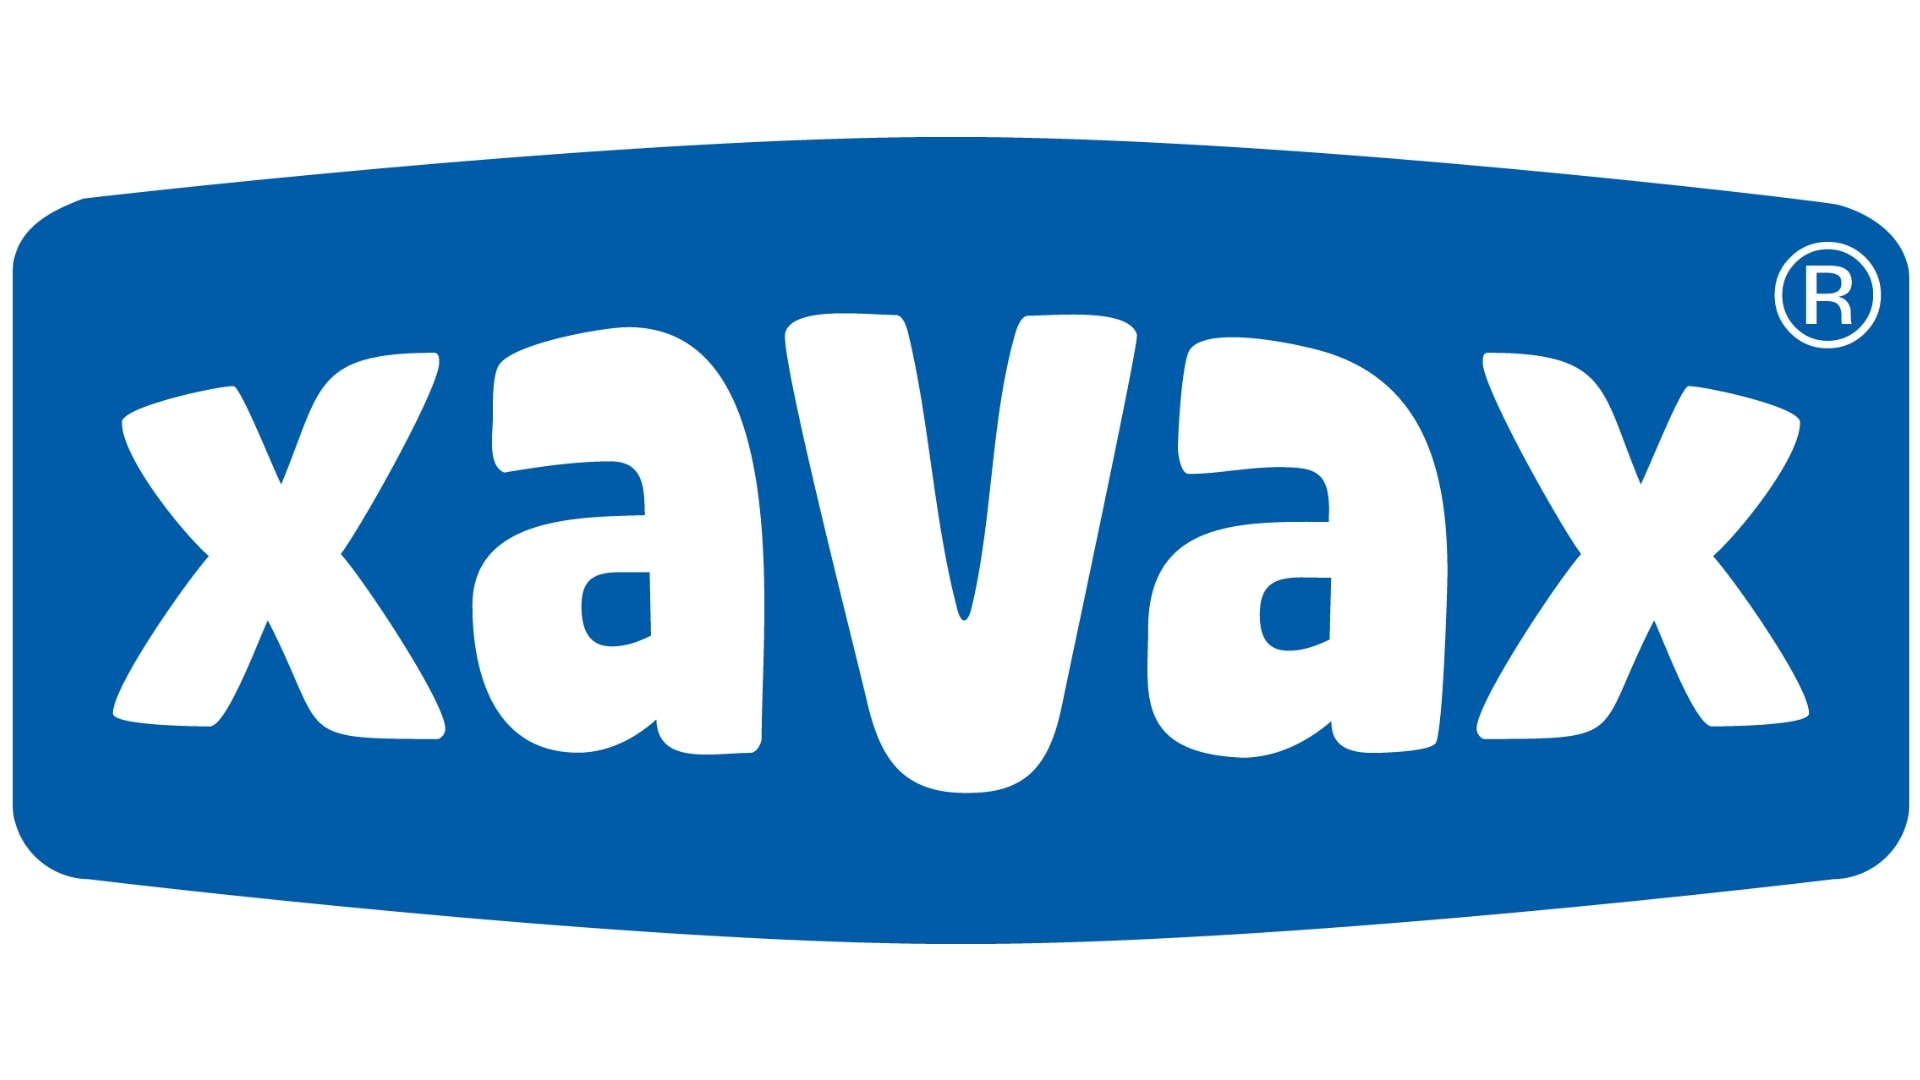 Xavax